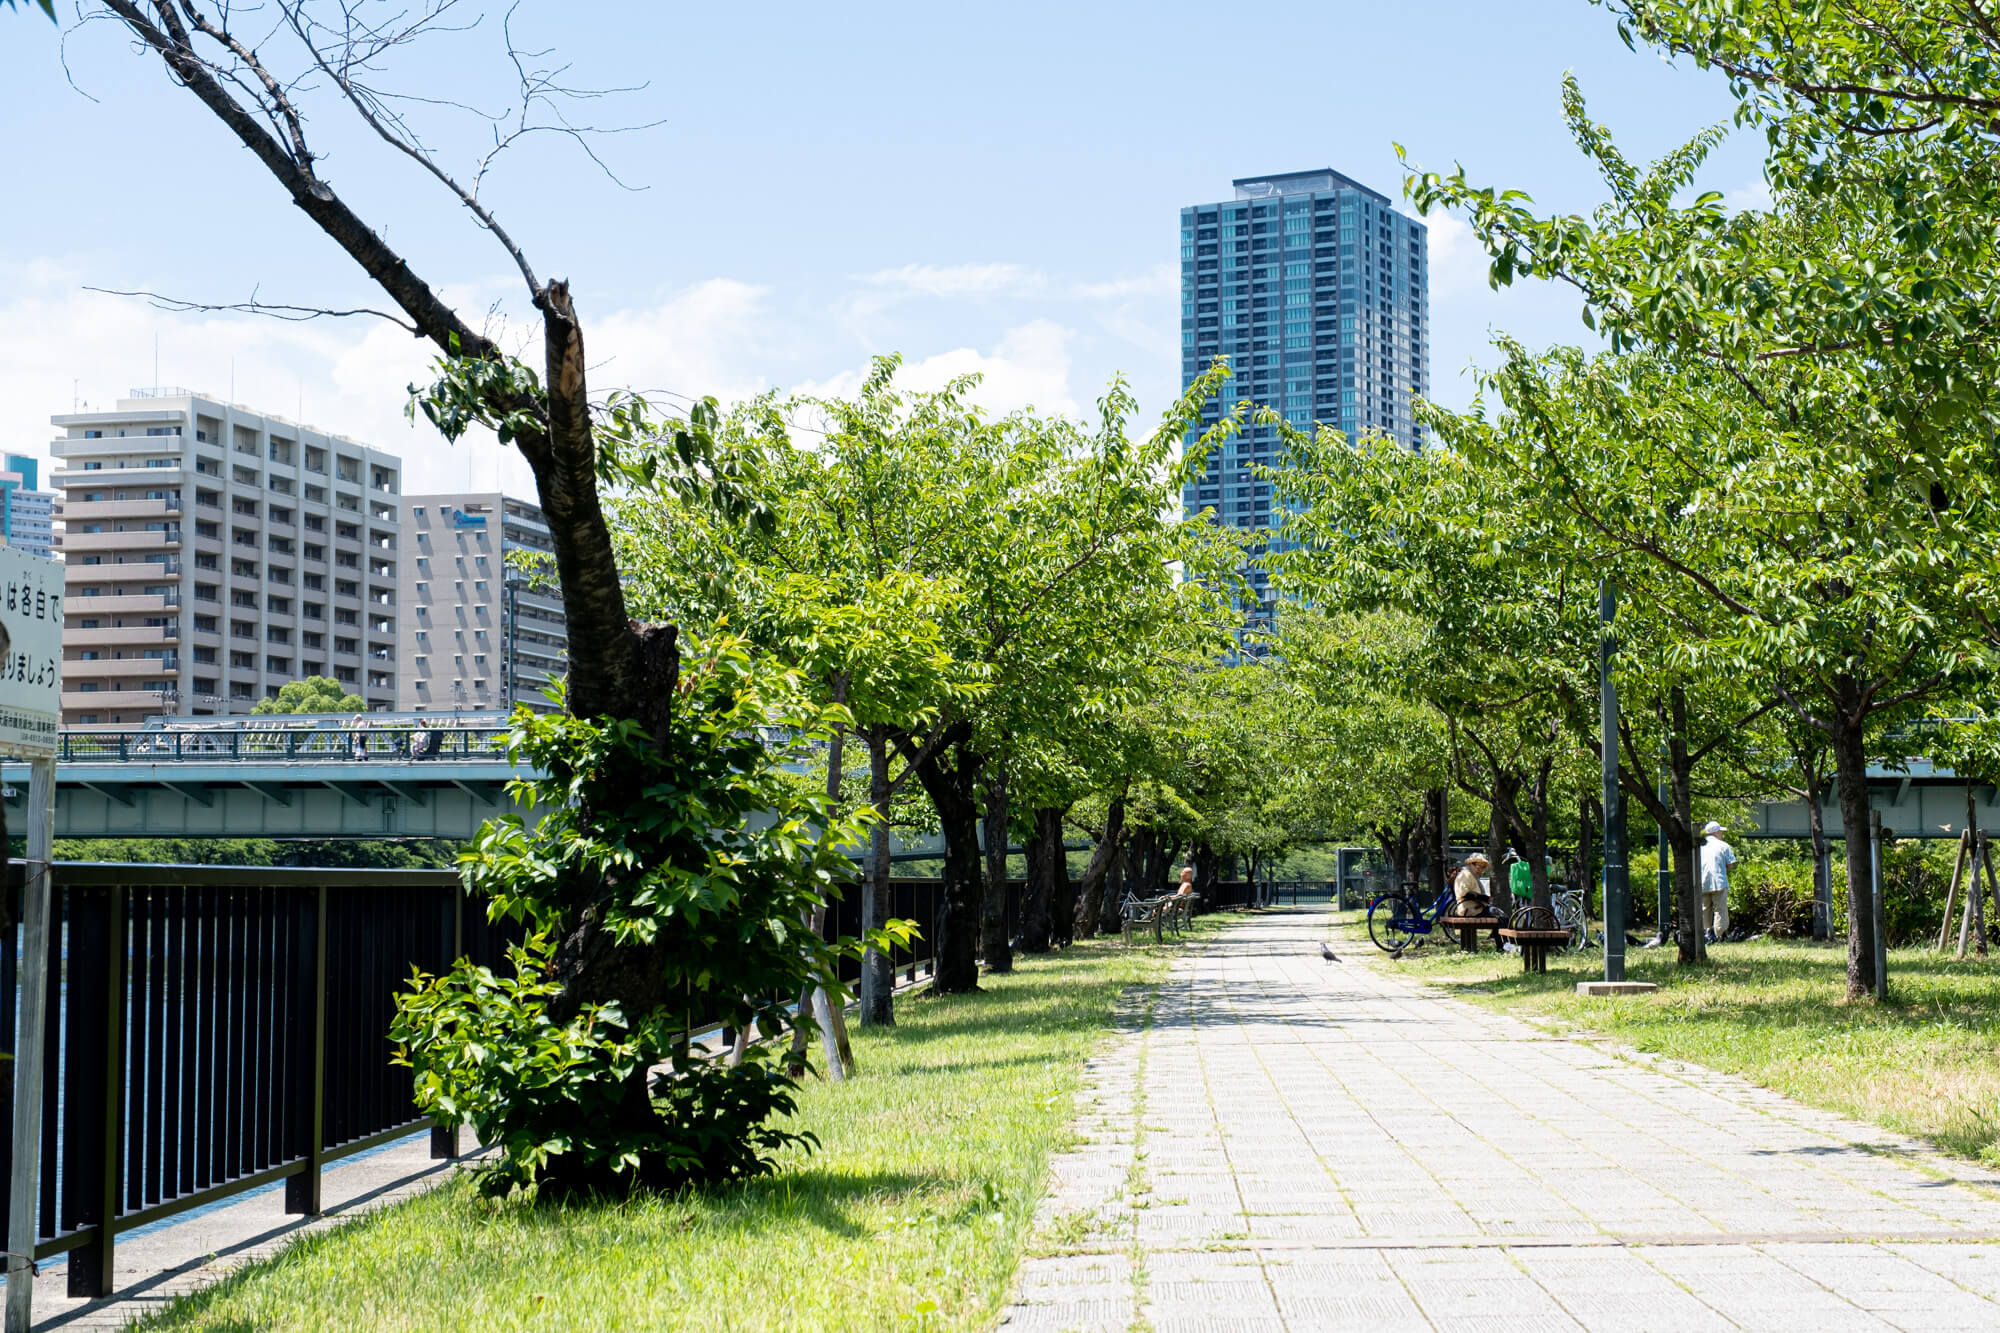 人とは違う写真を取りたいなら 大阪の撮影スポット桜ノ宮公園がおすすめ クリエイティブな旅を作るメディア Neo Osaka